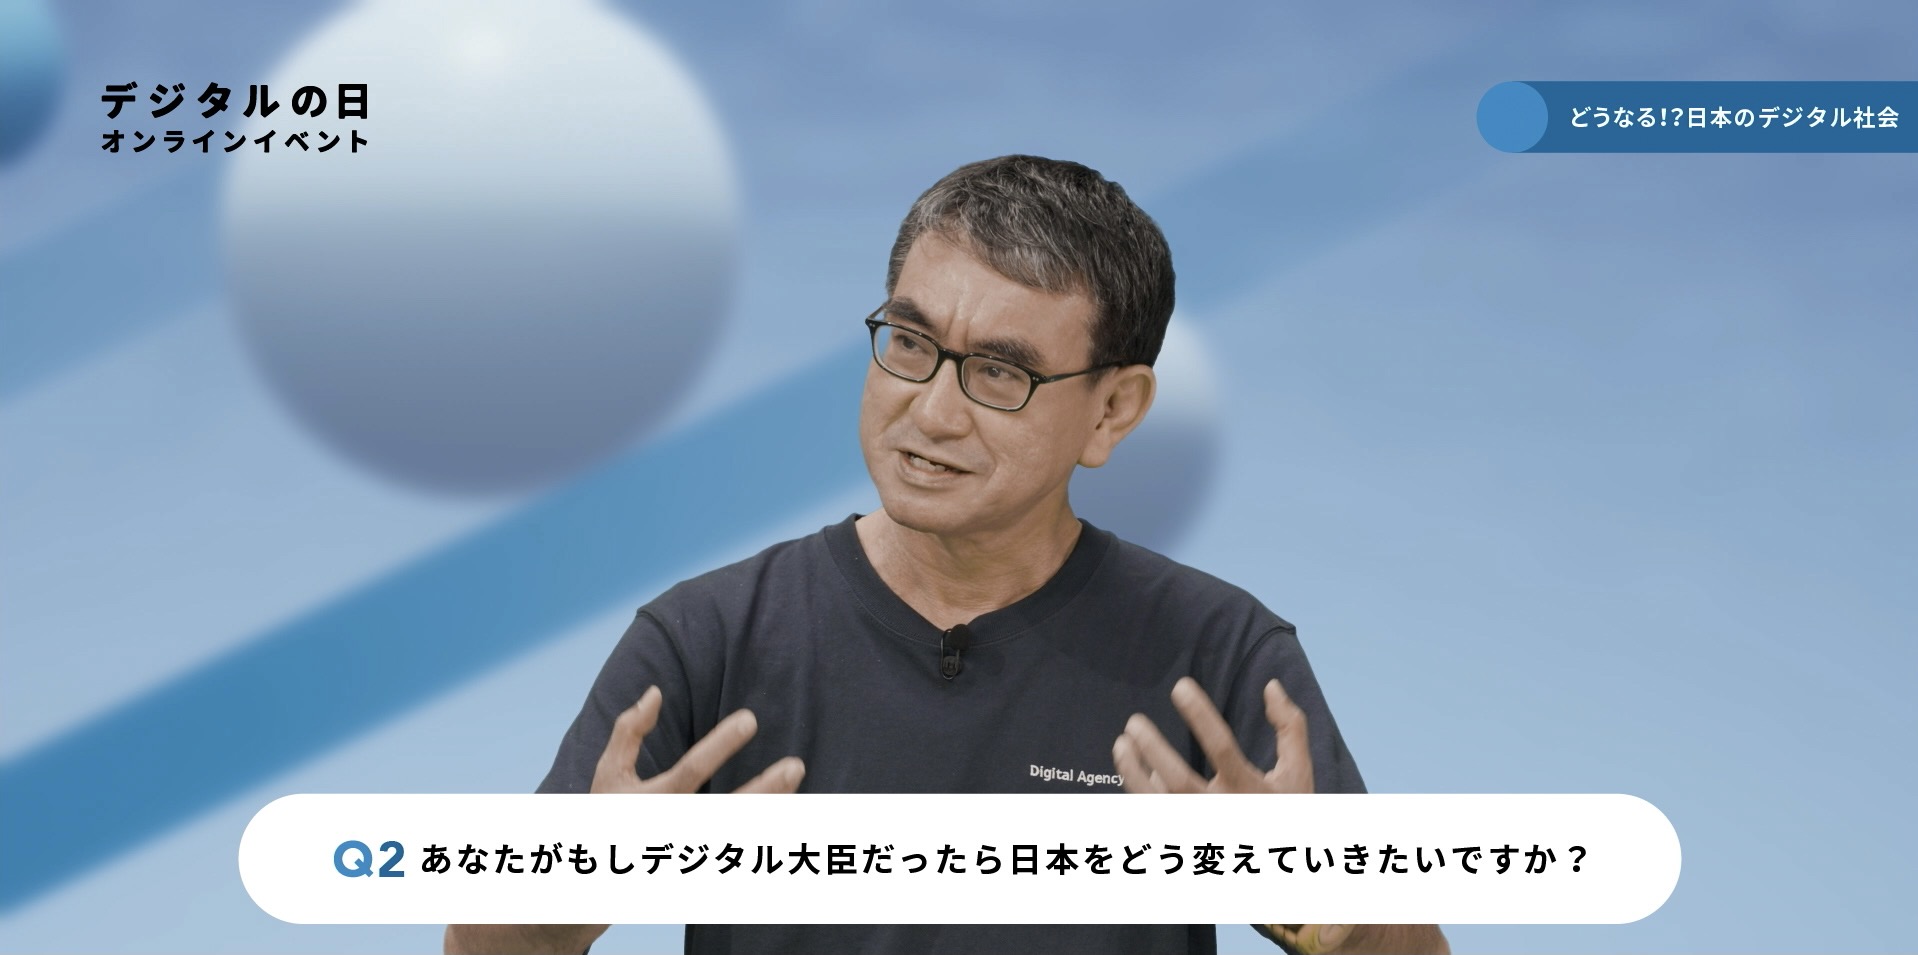 「どうなる！？日本のデジタル社会」イベントに参加する河野大臣の写真。写真の下にテロップで「Q2 あなたがもしデジタル大臣だったら日本をどう変えていきたいですか？」と質問が表示されている。